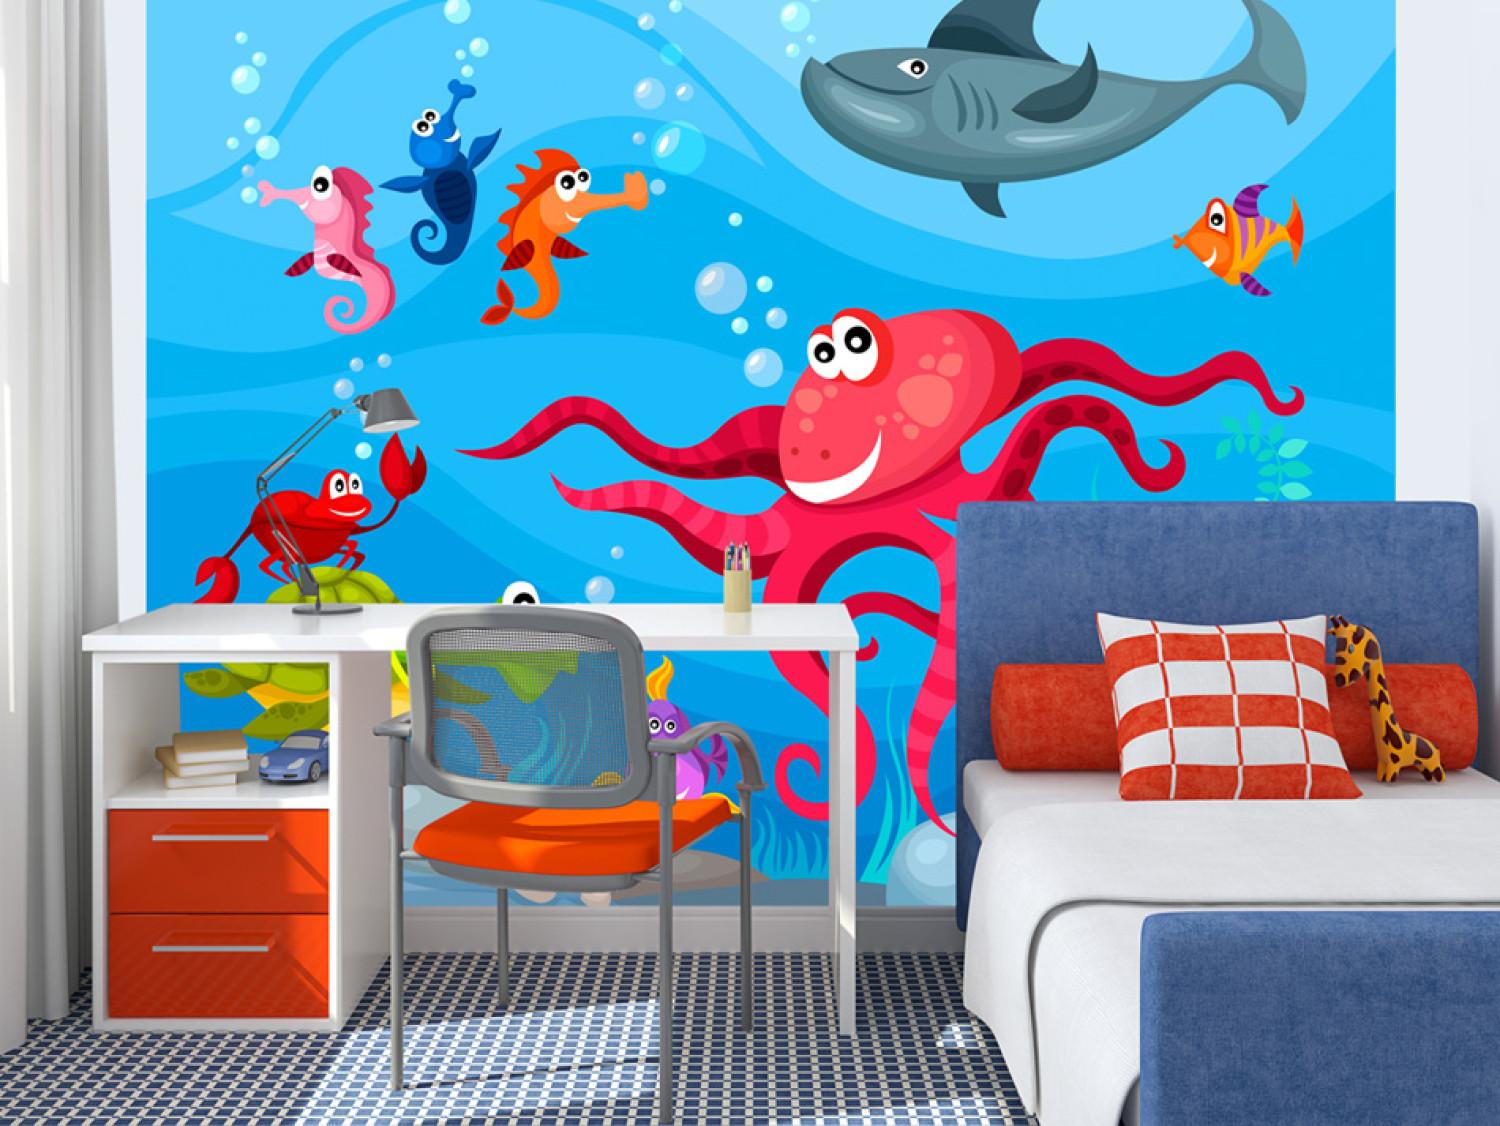 Wall Mural Underwater World - Marine animals: turtle, fish, octopus, and shark